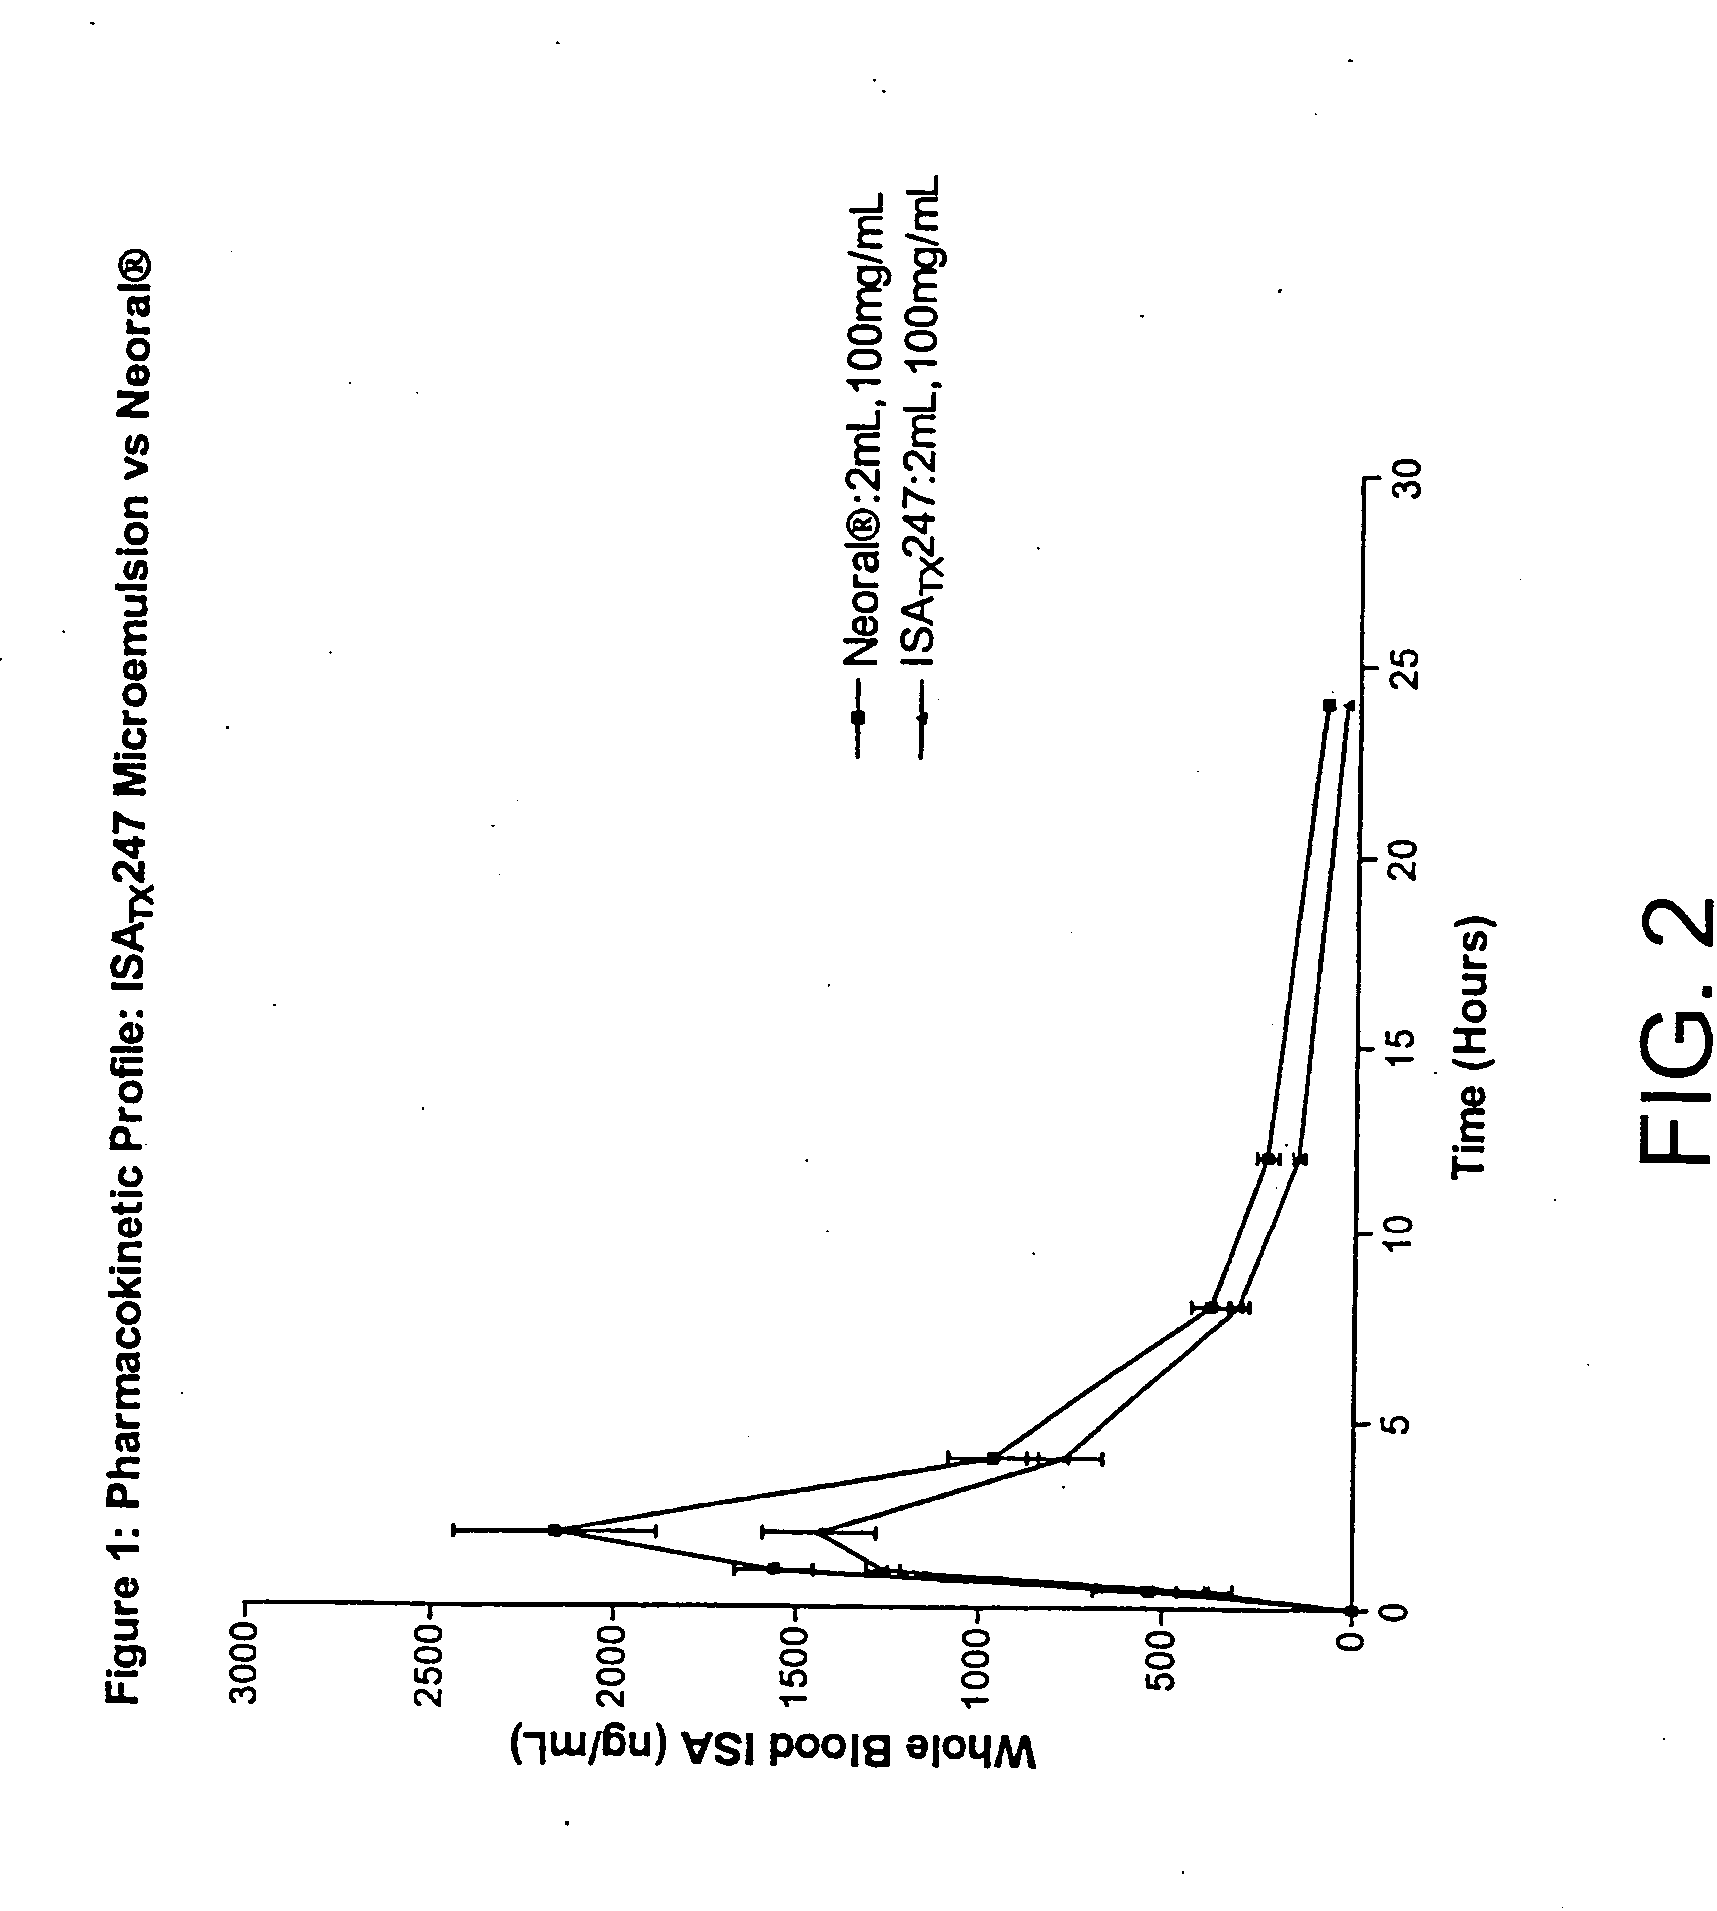 Novel cyclosporine analog formulations